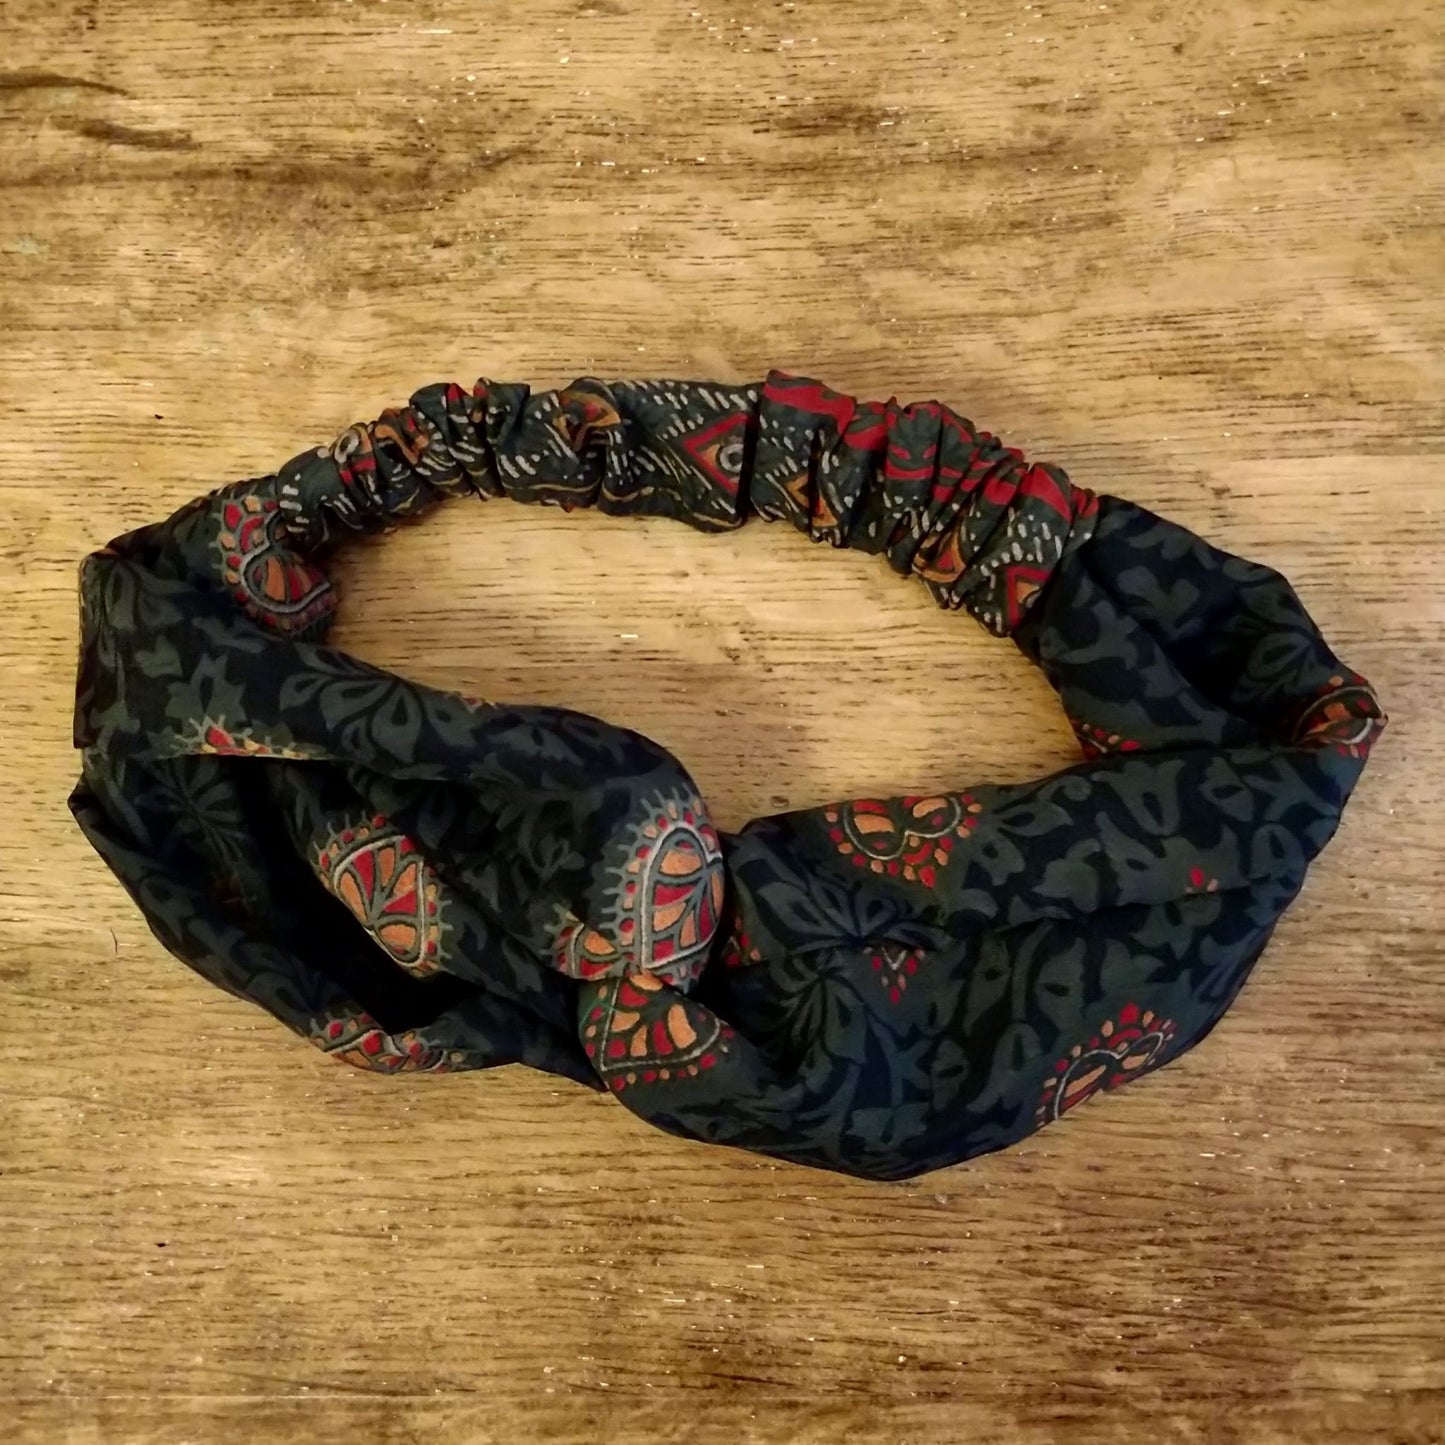 Turban Headband made from Upcycled Saris - midnight